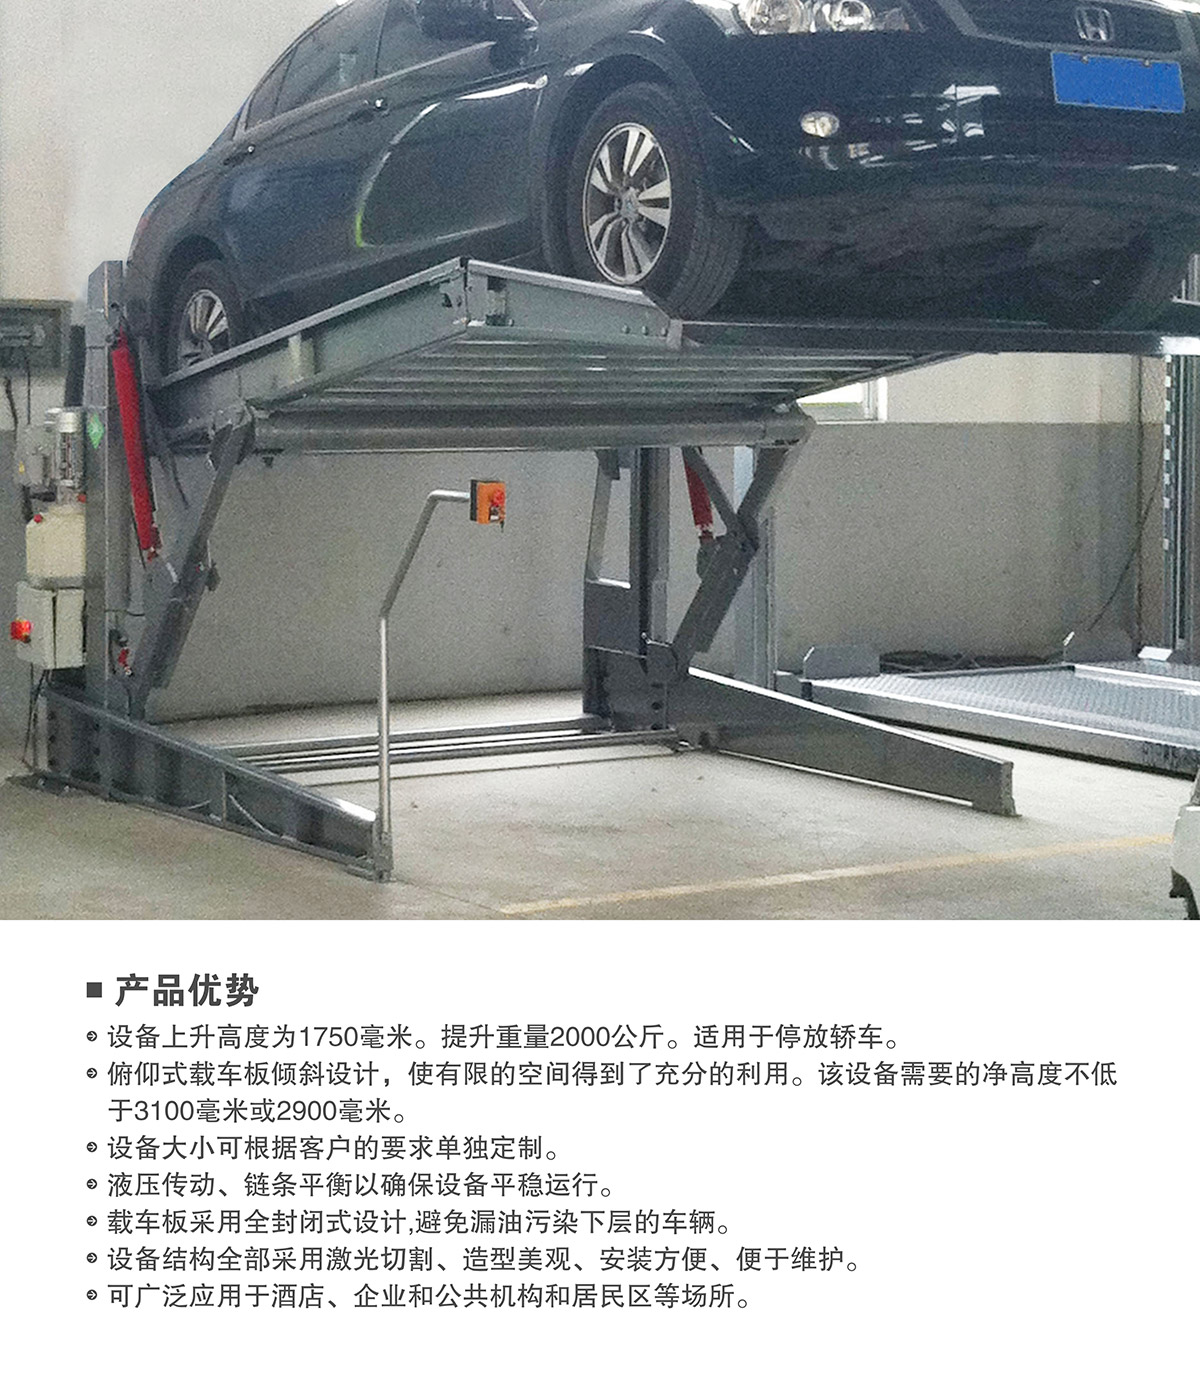 贵州俯仰式简易升降立体停车设备产品优势.jpg